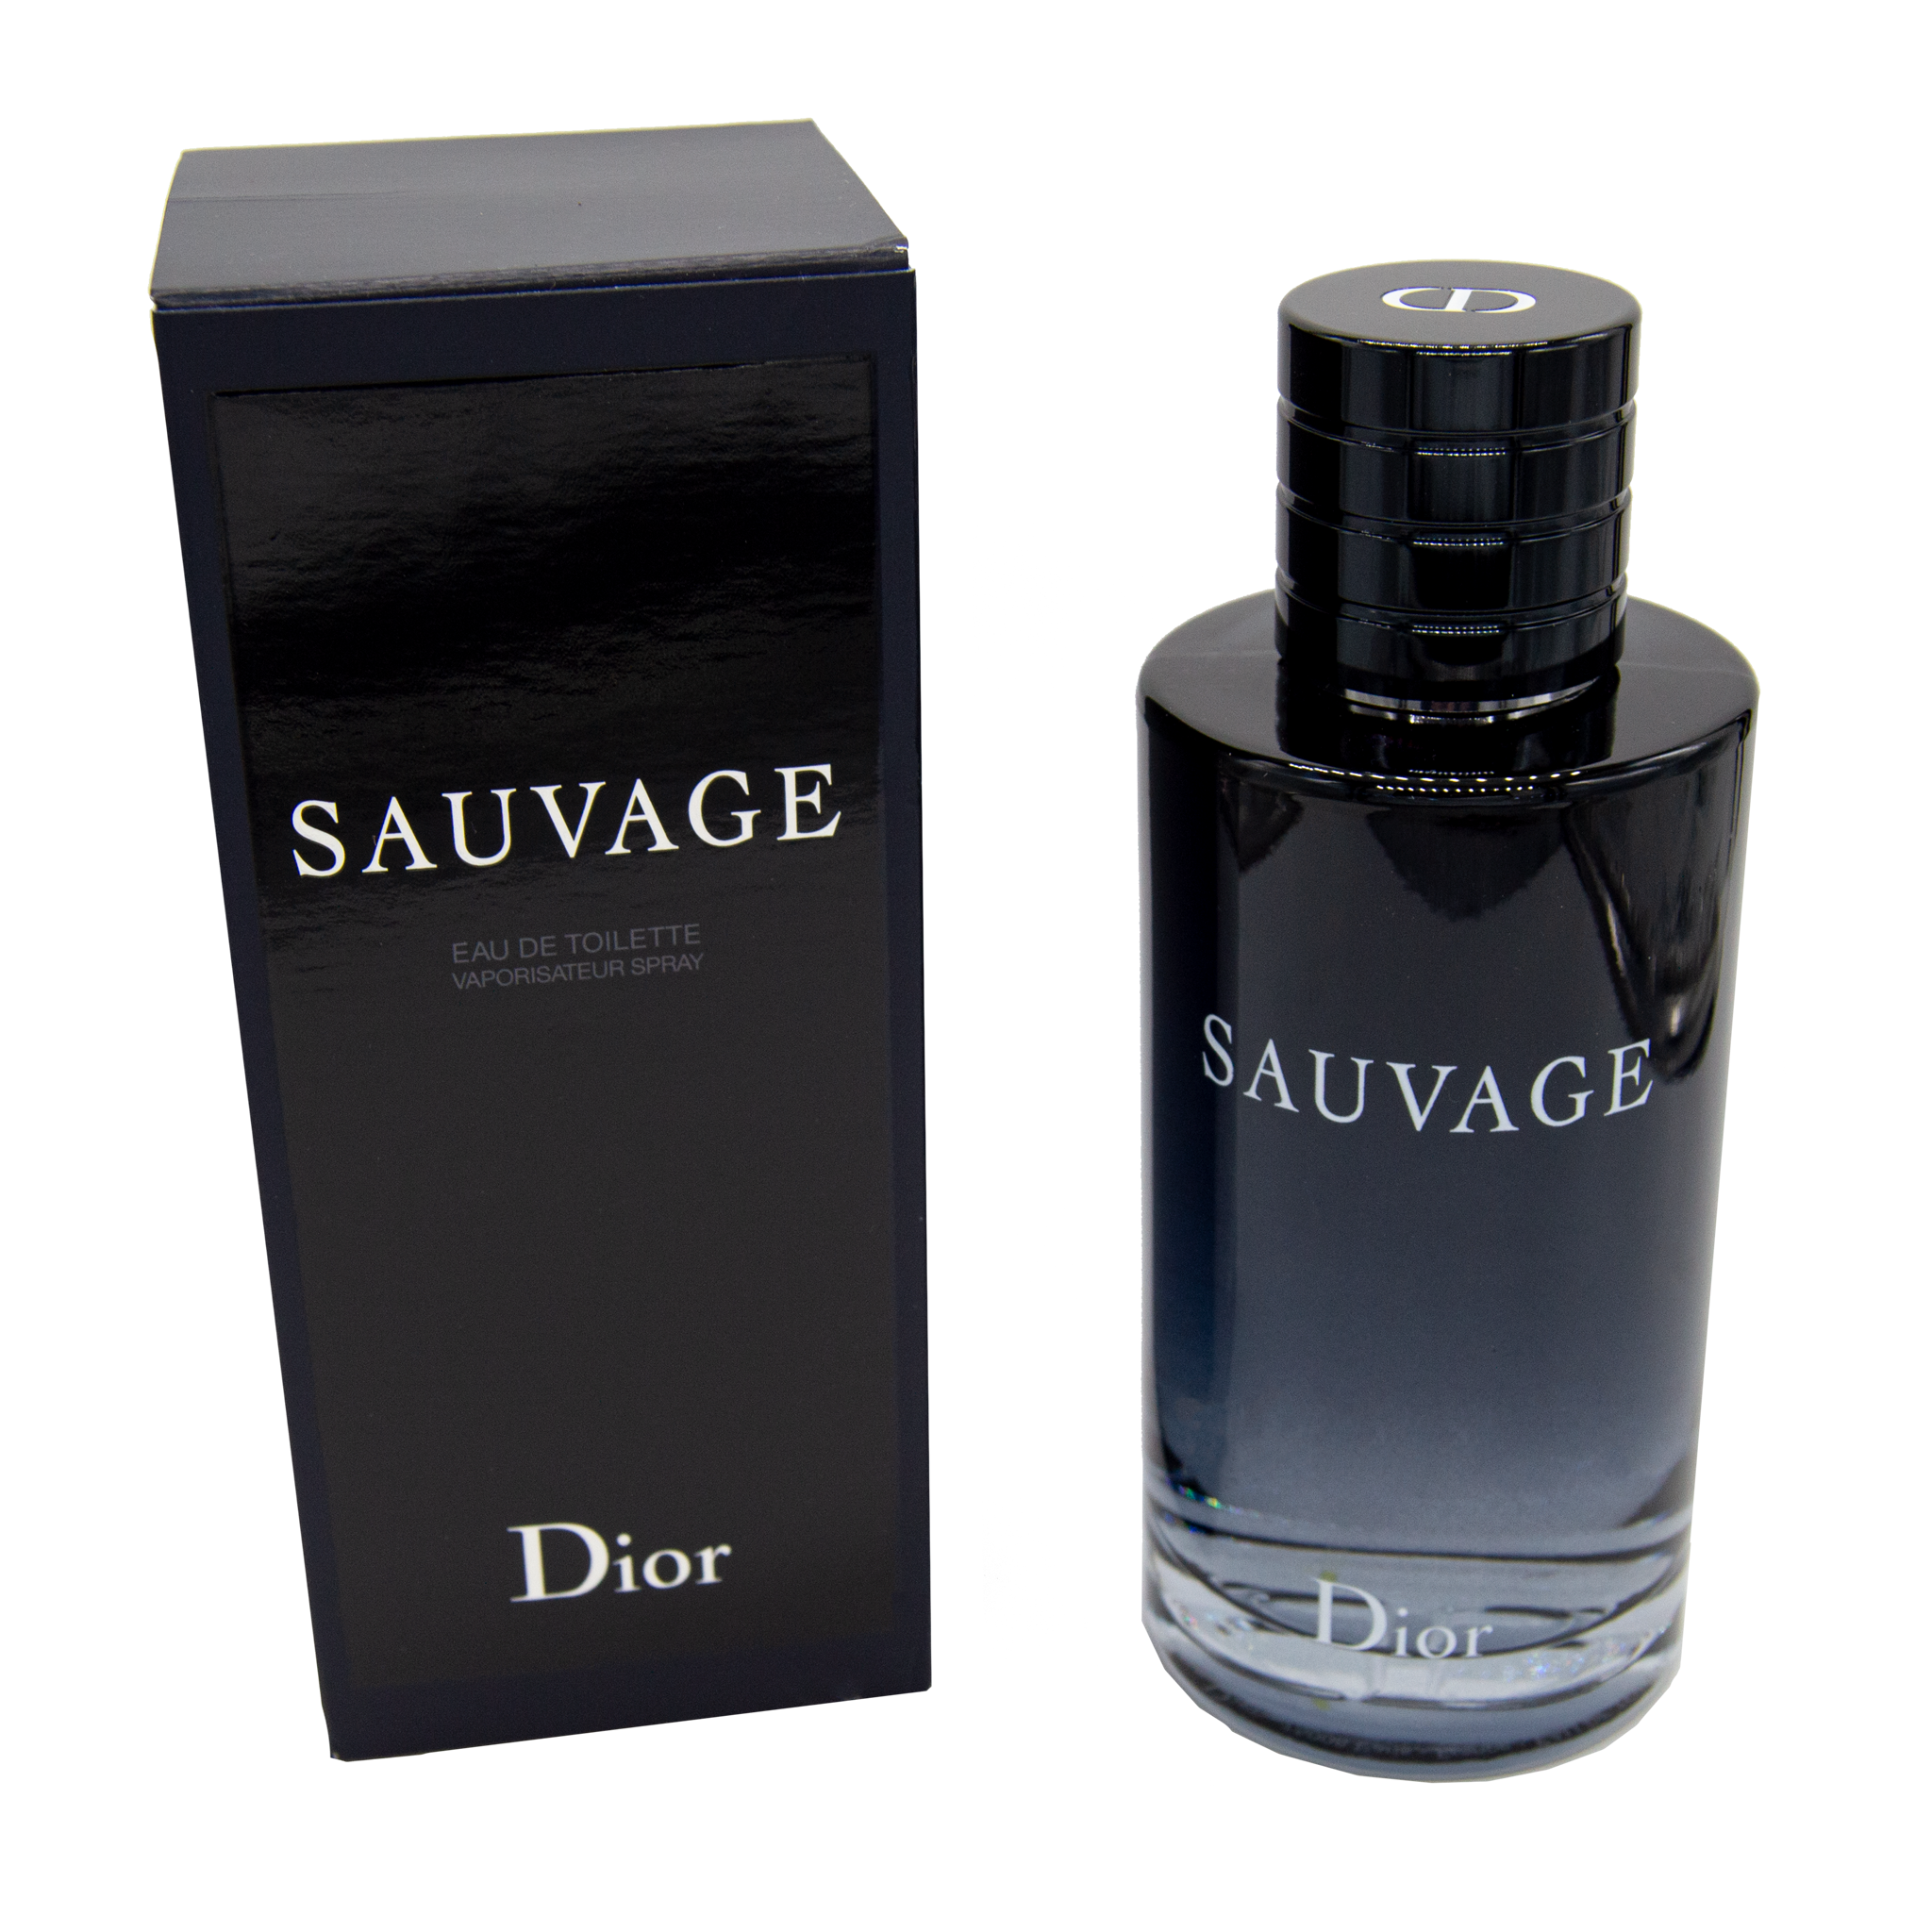 Dior Sauvage Eau de Toilette – Essence Fragrances Online